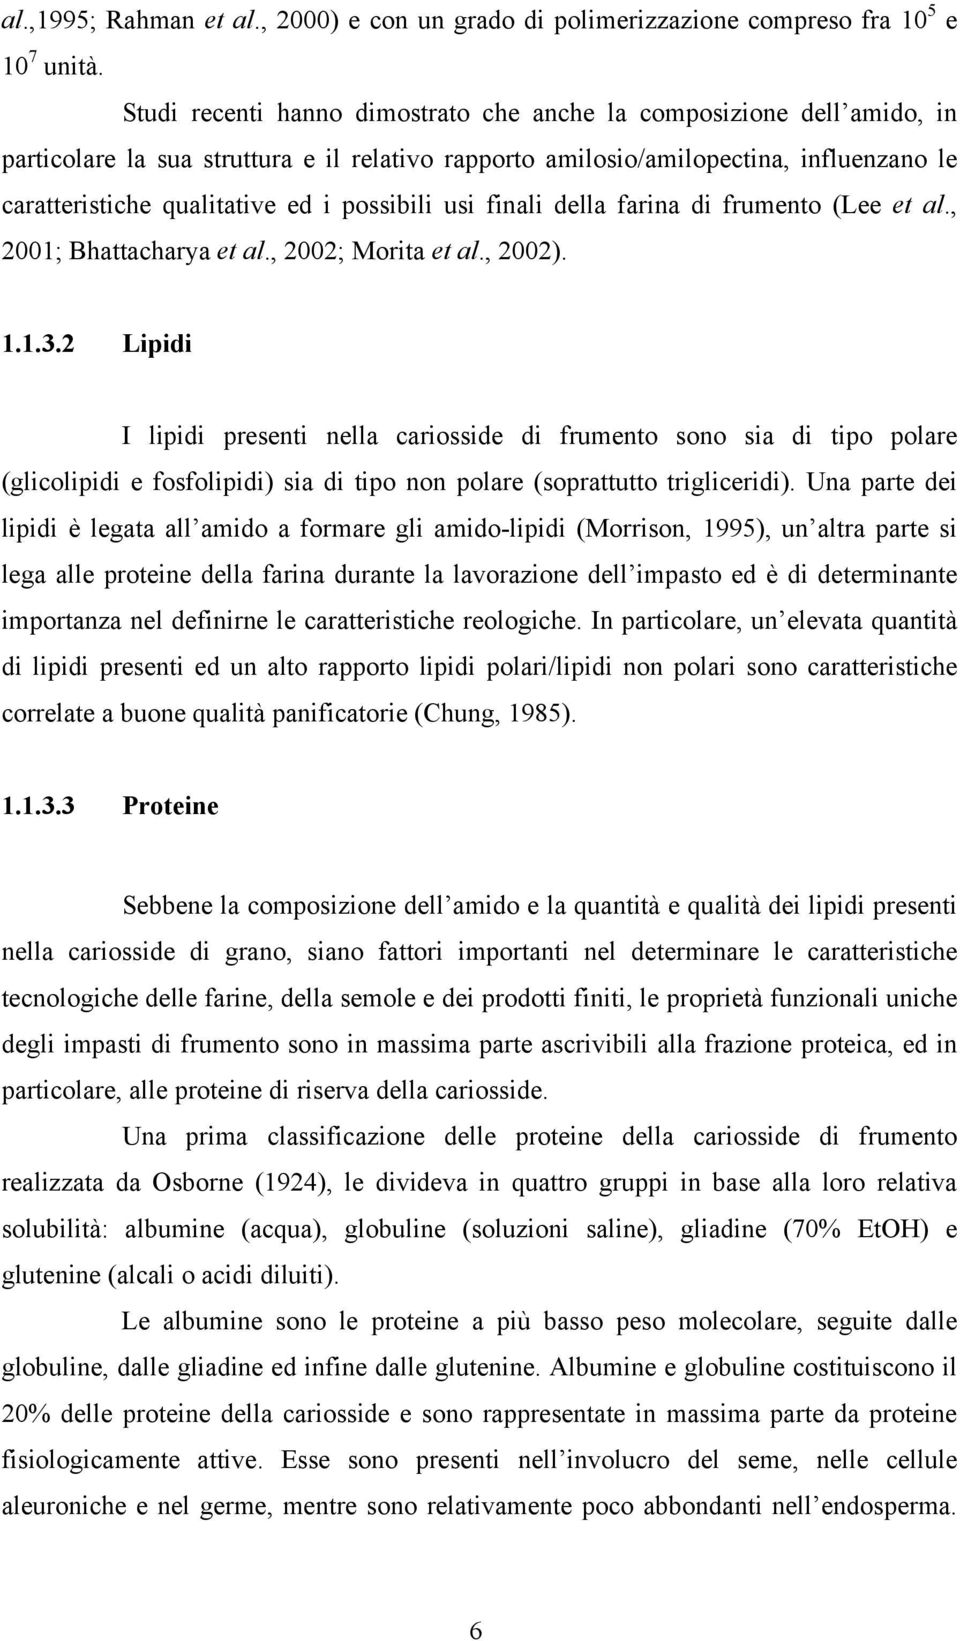 possibili usi finali della farina di frumento (Lee et al., 2001; Bhattacharya et al., 2002; Morita et al., 2002). 1.1.3.